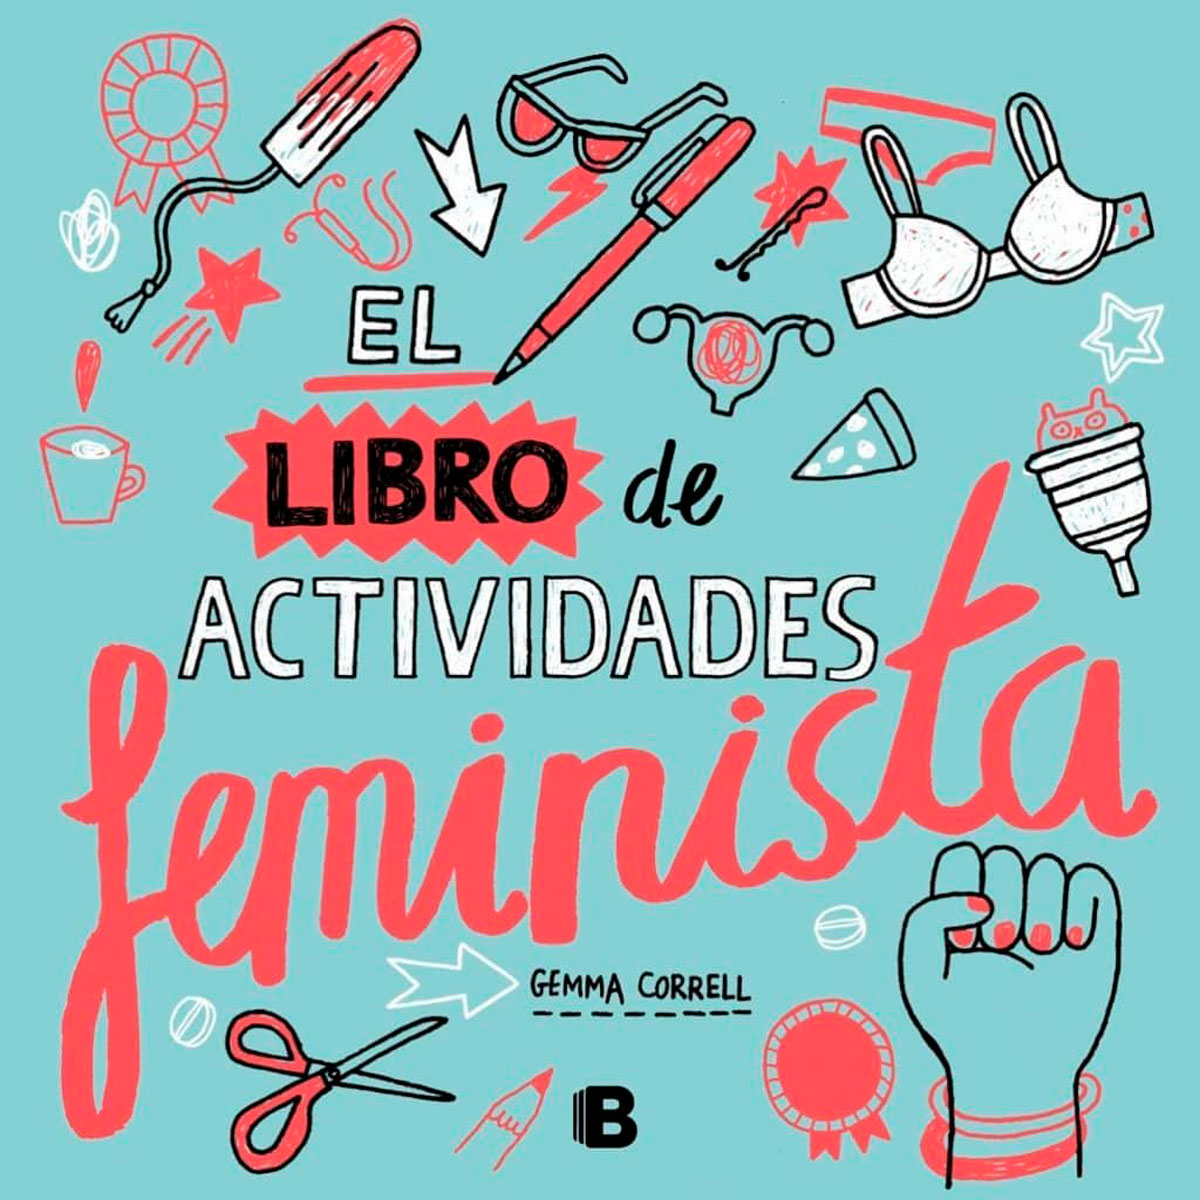 Libro de actividades feministas